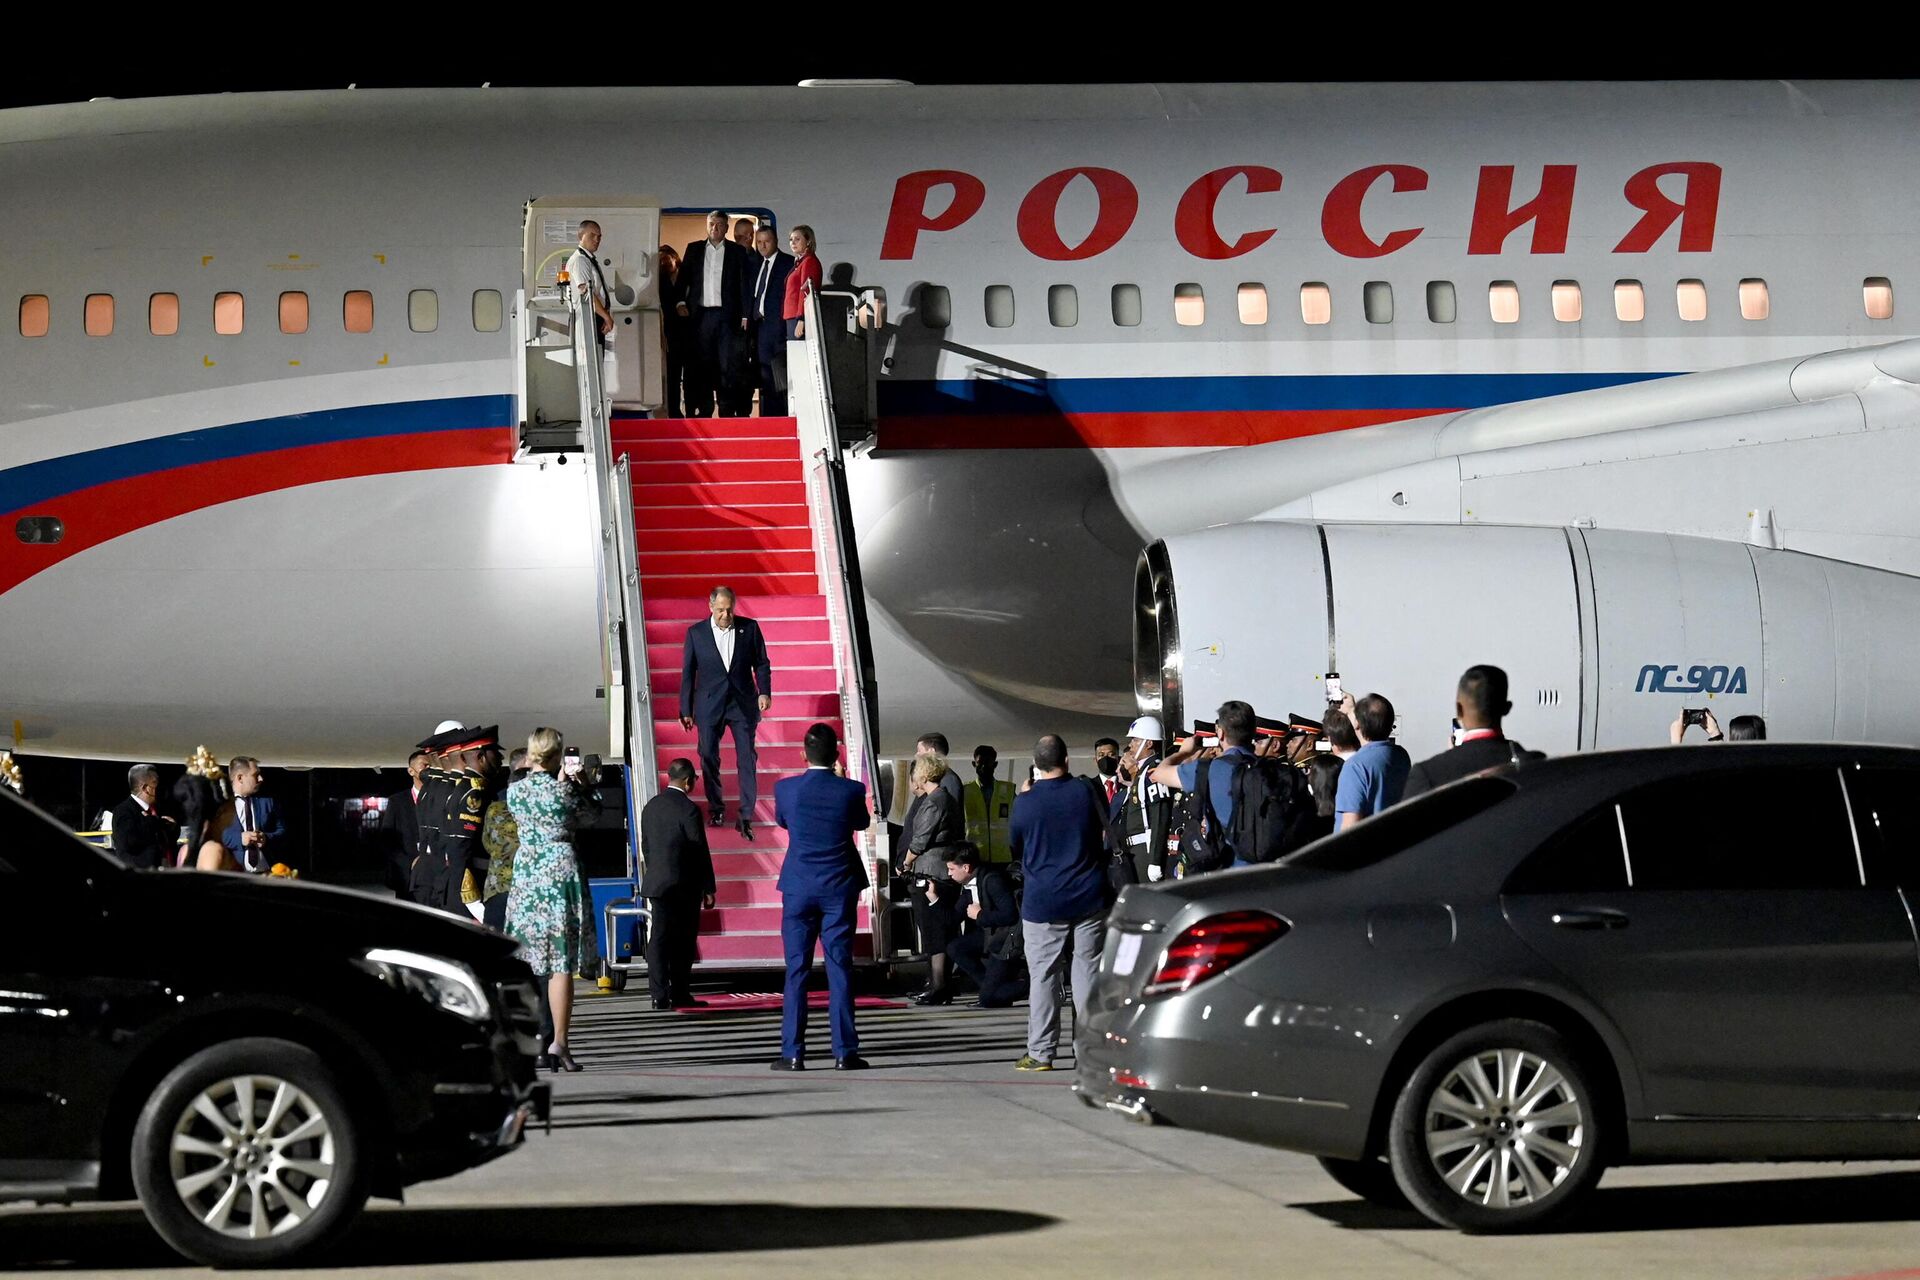 Ngoại trưởng Nga Sergei Lavrov đã đến sân bay Quốc tế Tuban, Bali để dự đến dự hội nghị thượng đỉnh G20 - Sputnik Việt Nam, 1920, 17.11.2022